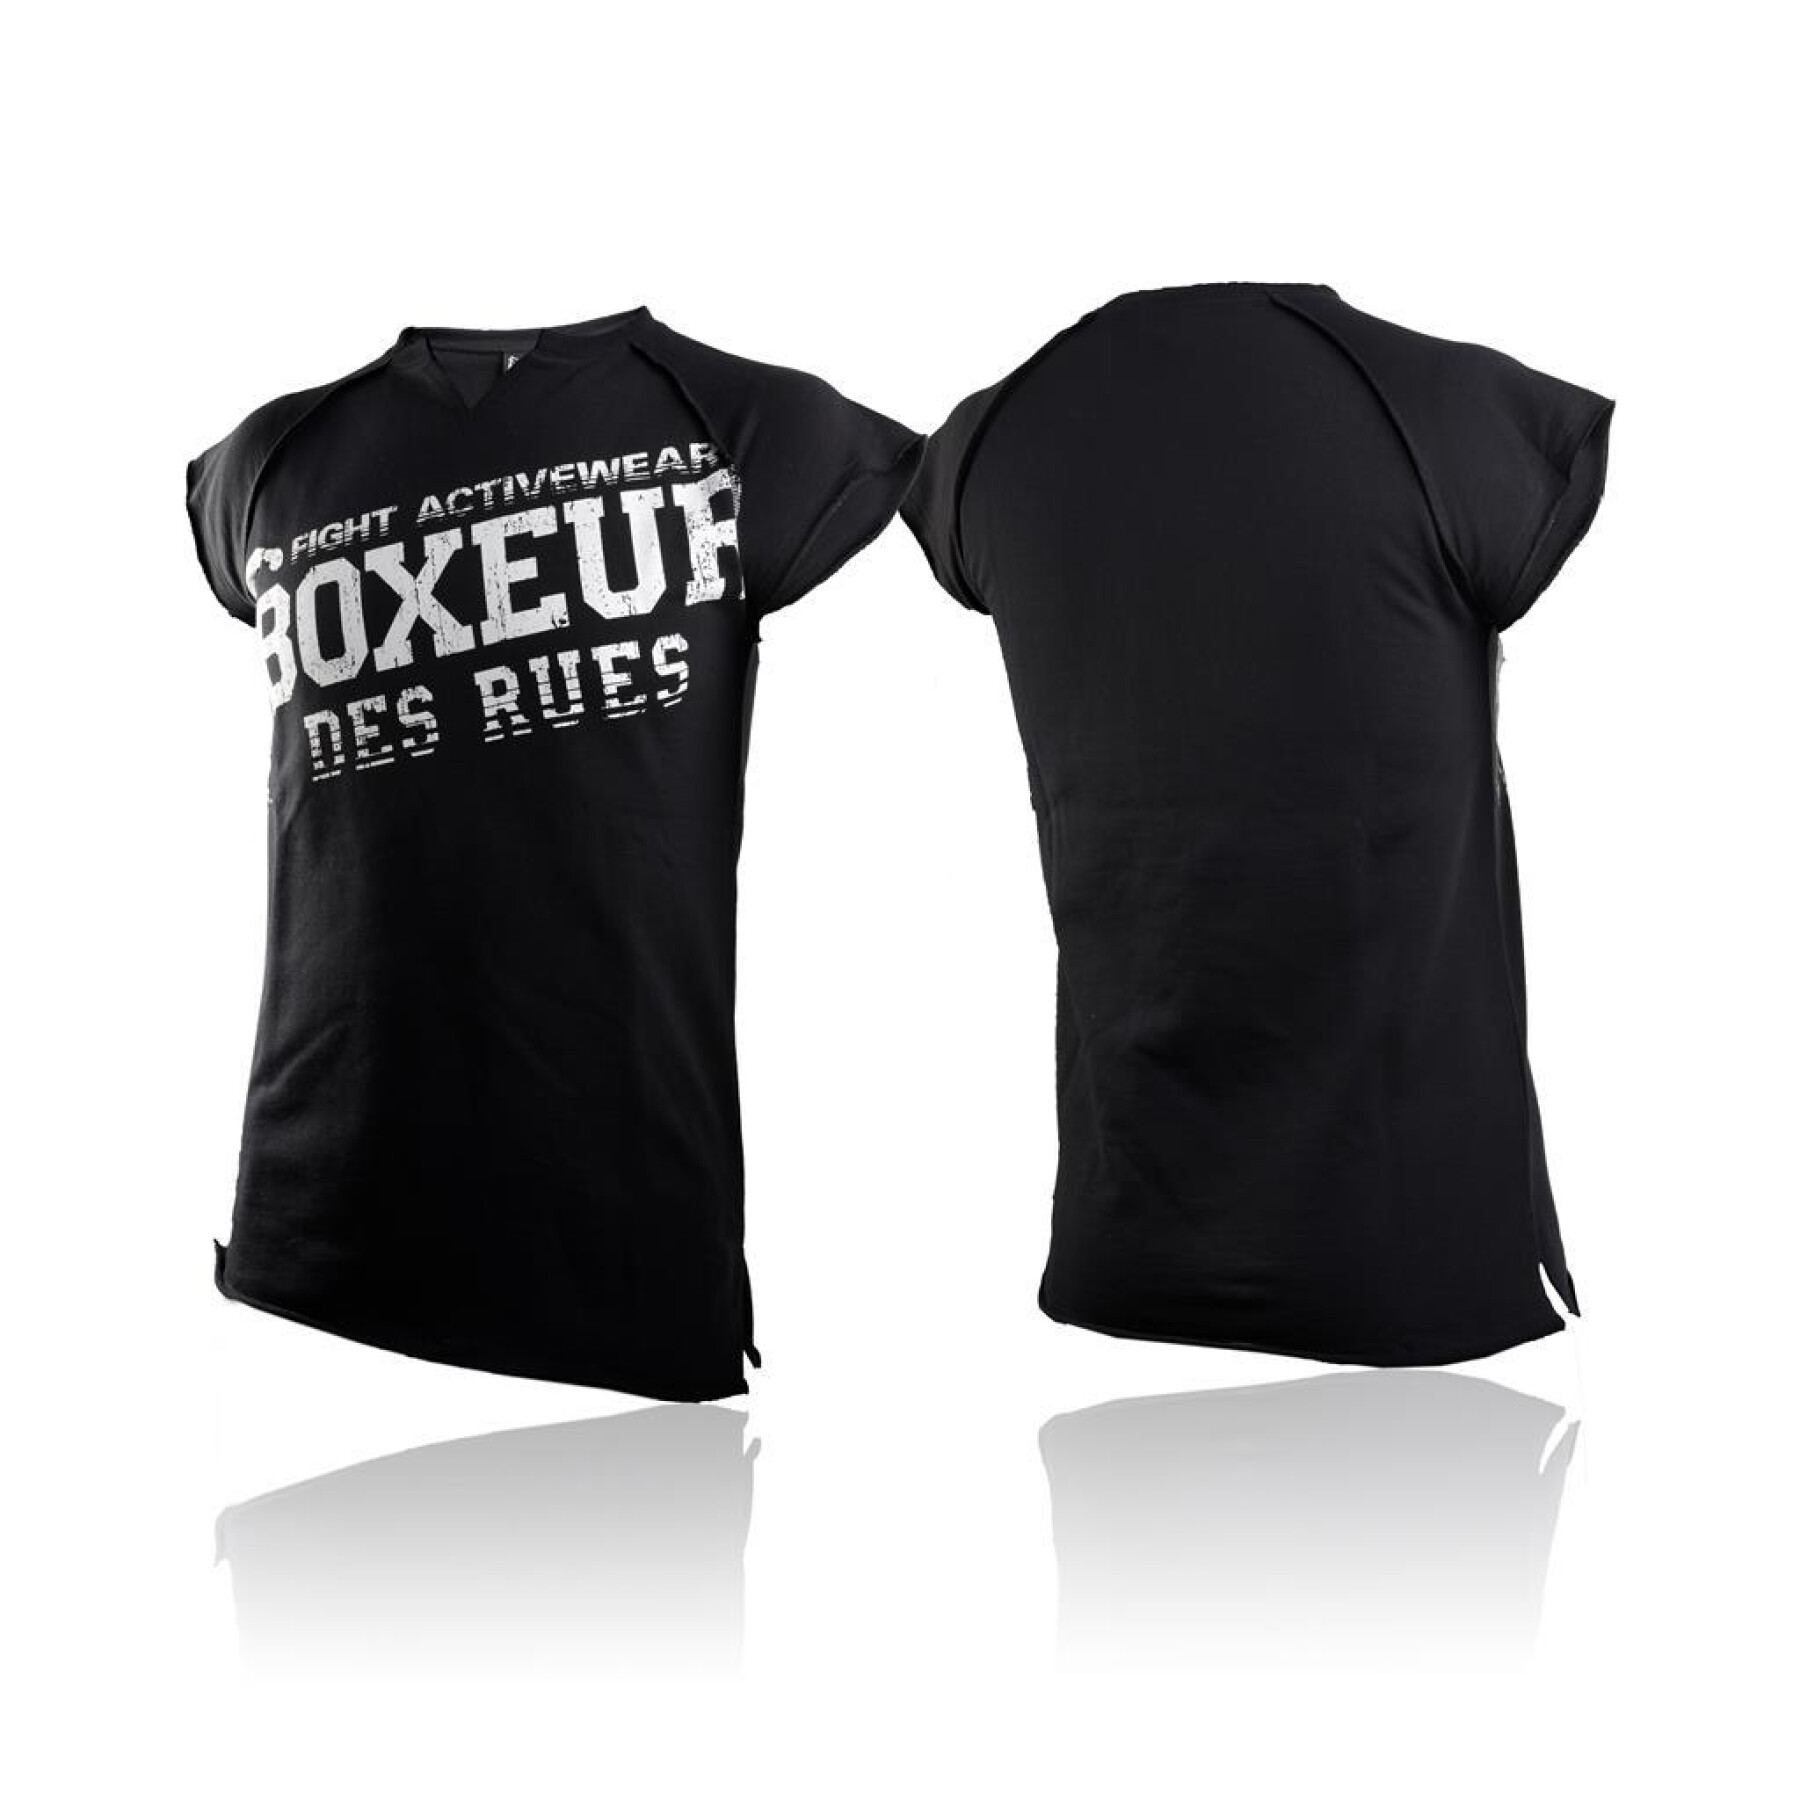 Bedrucktes T-shirt Boxeur des rues Raw